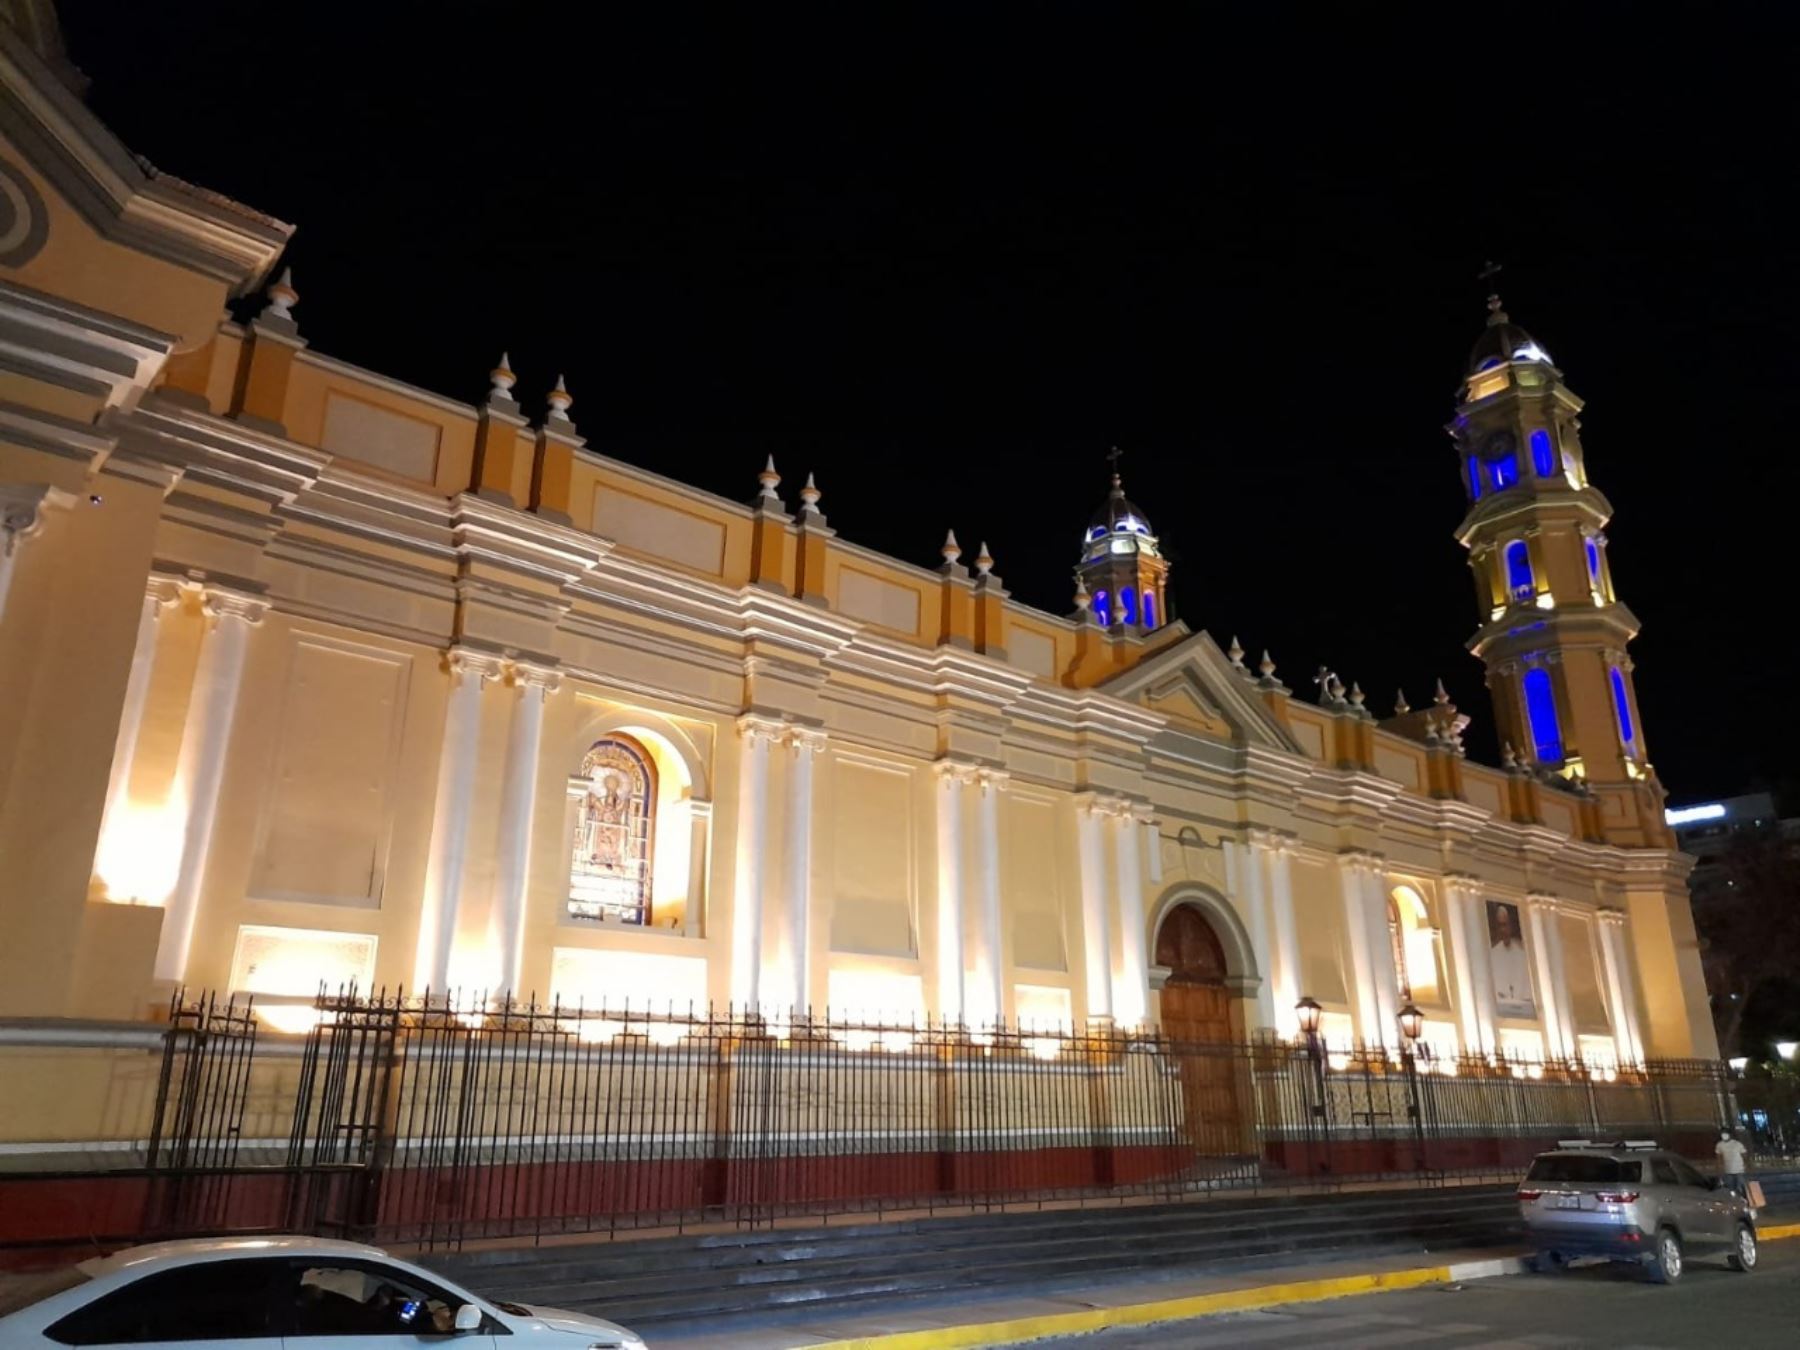 La Catedral de Piura cuenta ahora con un moderno sistema de electrificación. El equipo fue instalado como parte de los trabajos de rehabilitación del templo que resultó afectado por el fuerte sismo de magnitud 6.1 registrado el 30 de julio pasado.